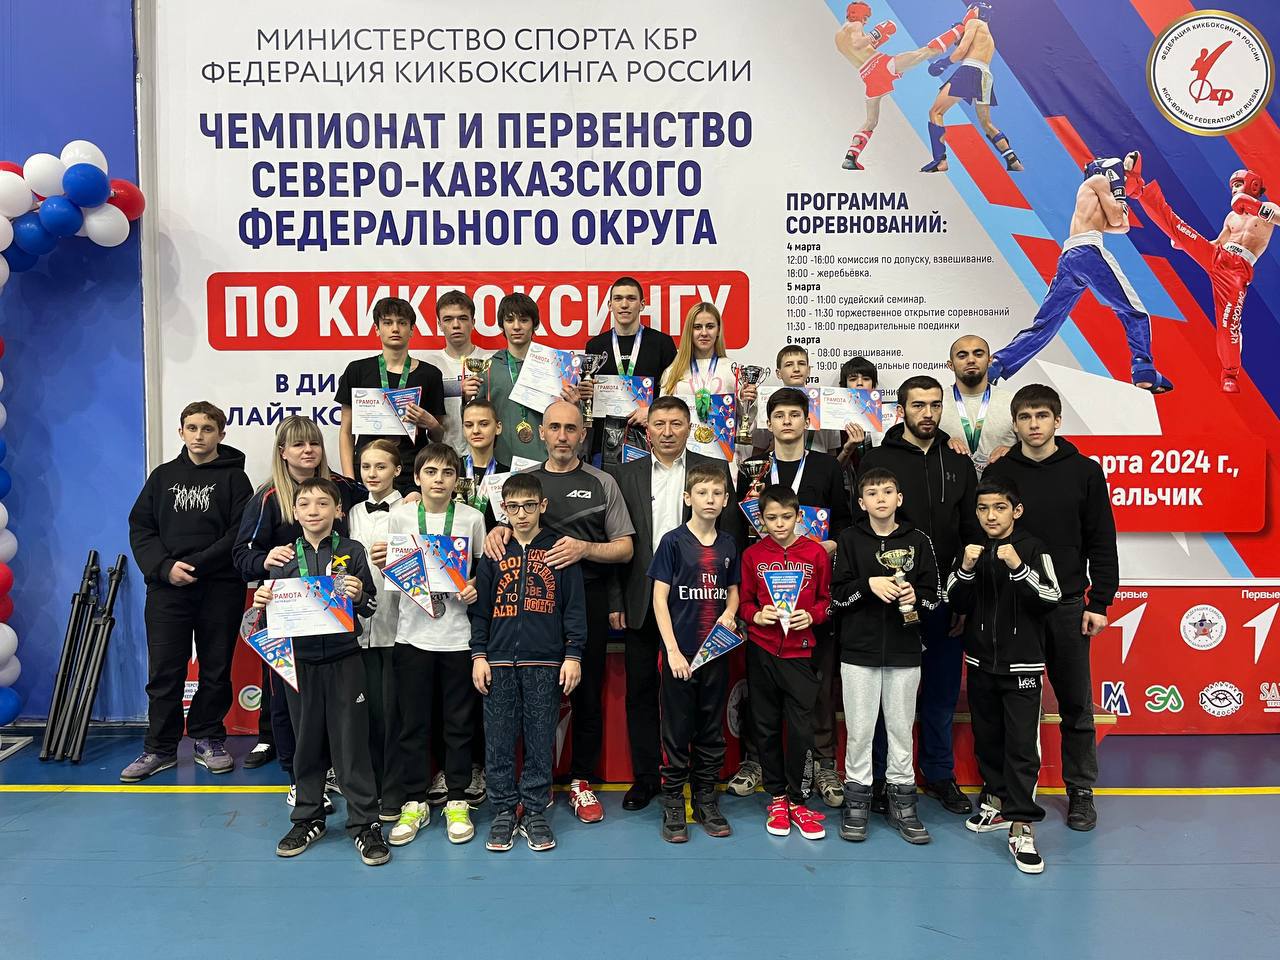 Кикбоксёры Карачаево-Черкесии завоевали 21 медаль на Чемпионате и Первенстве СКФО